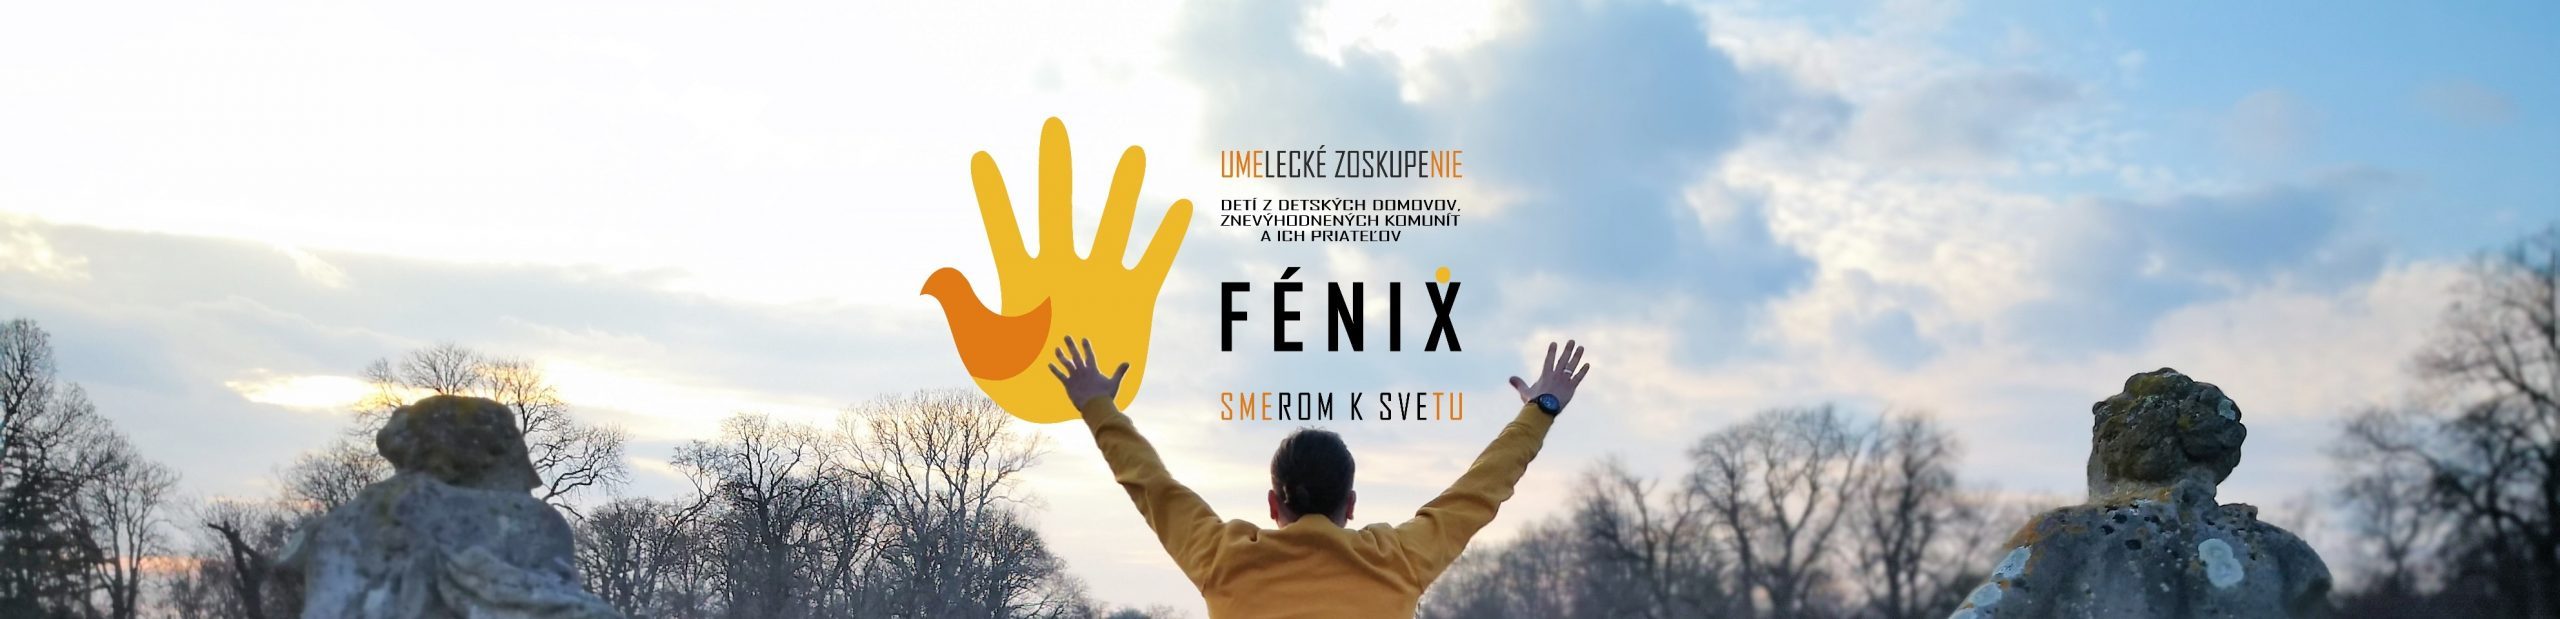 Umelecké zoskupenie detí z detských domovov, znevýhodnených komunít a ich priateľov FÉNIX